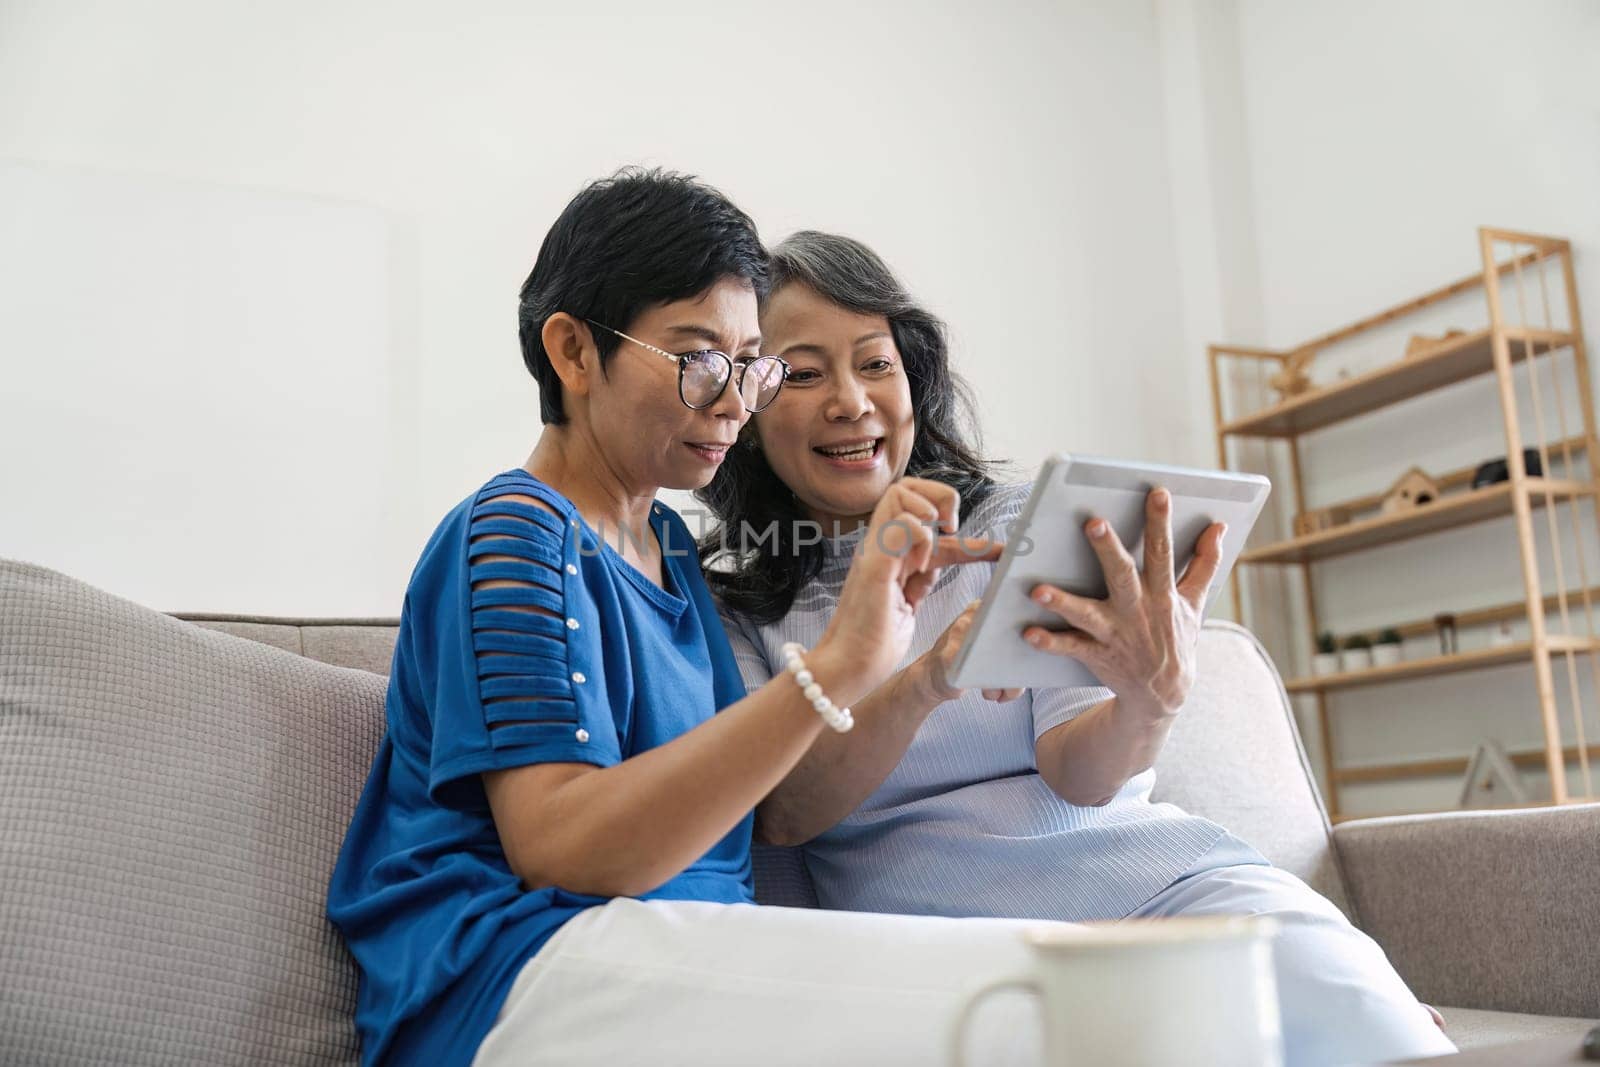 Senior female friend using digital tablet together.